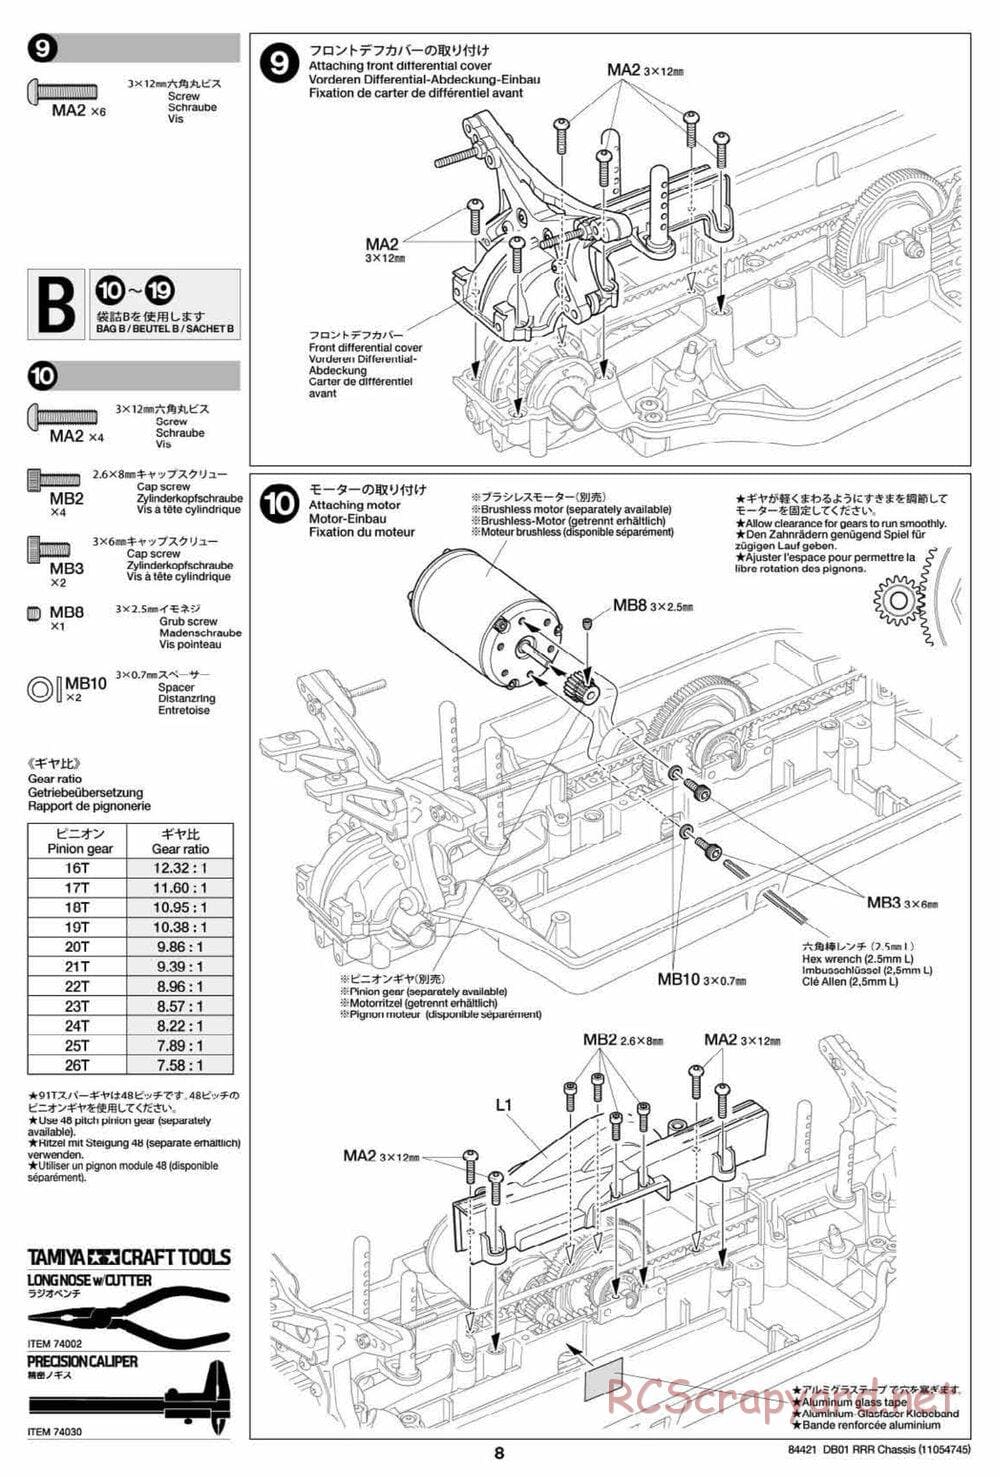 Tamiya - DB-01 RRR Chassis - Manual - Page 8